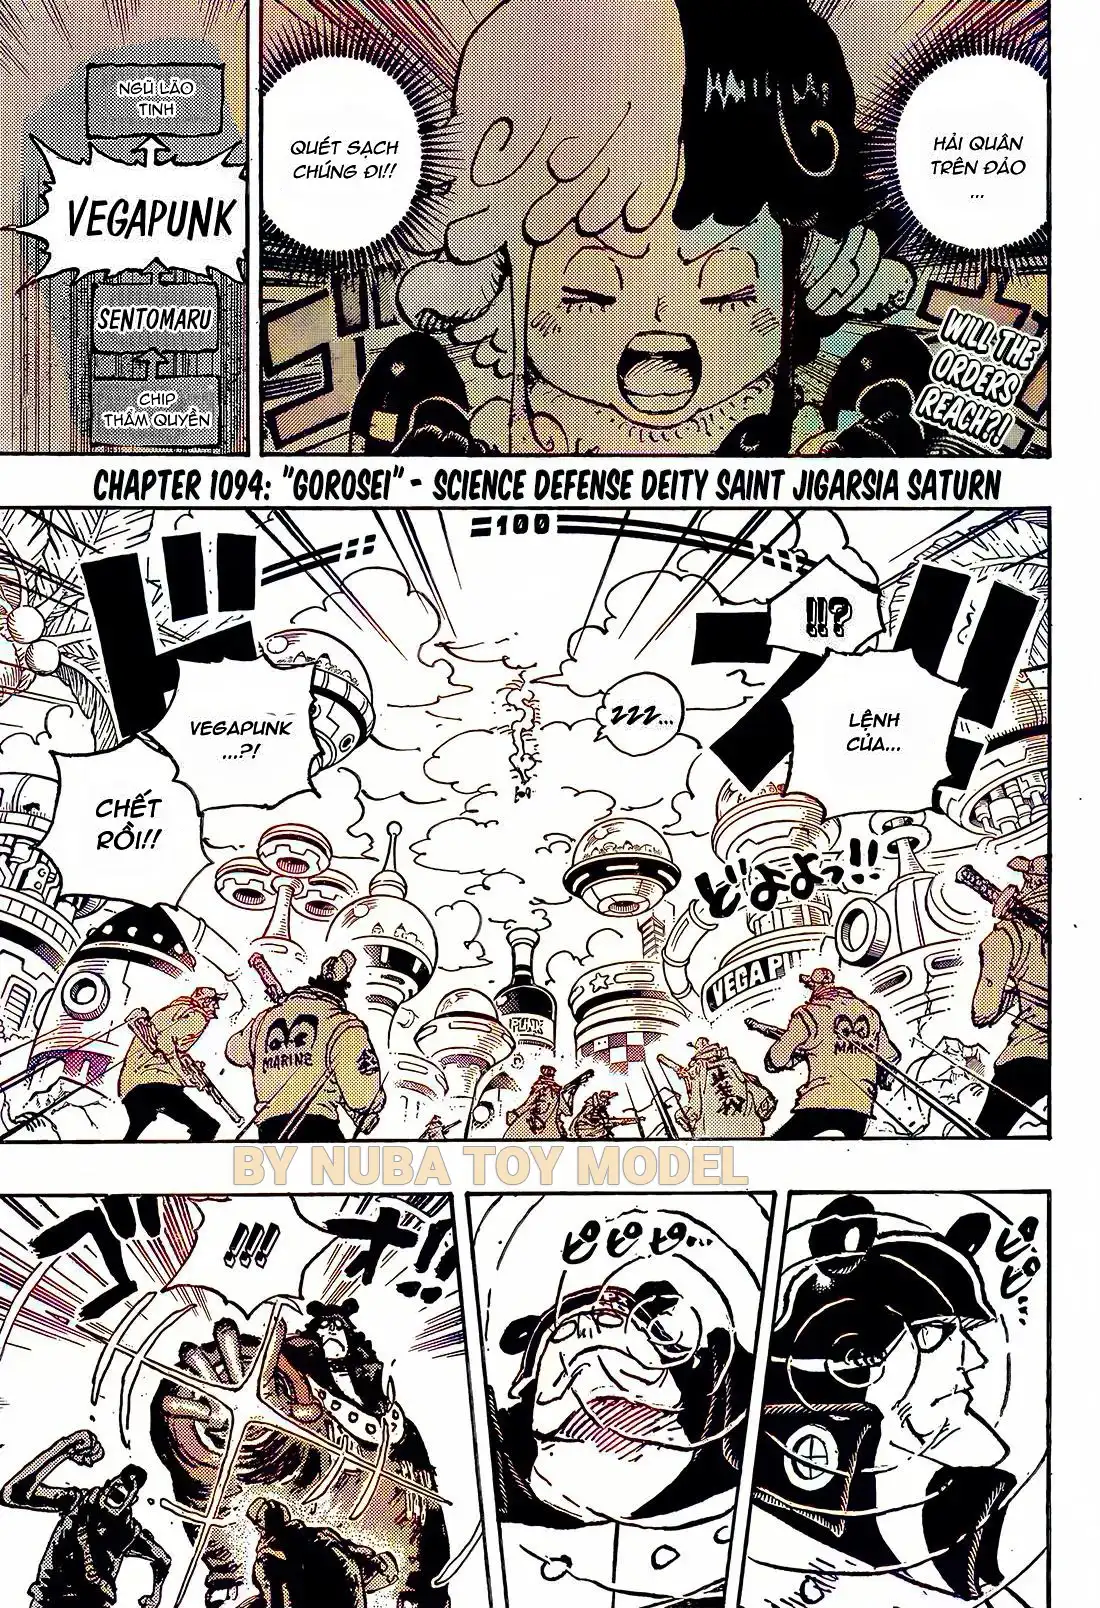 One Piece Chương 1094 bắt đầu với một bước ngoặt bất ngờ khi tất cả Pacifistas, dưới sự chỉ huy của Atlas, tiến hành một cuộc tấn công dữ dội chống lại Hải quân. 